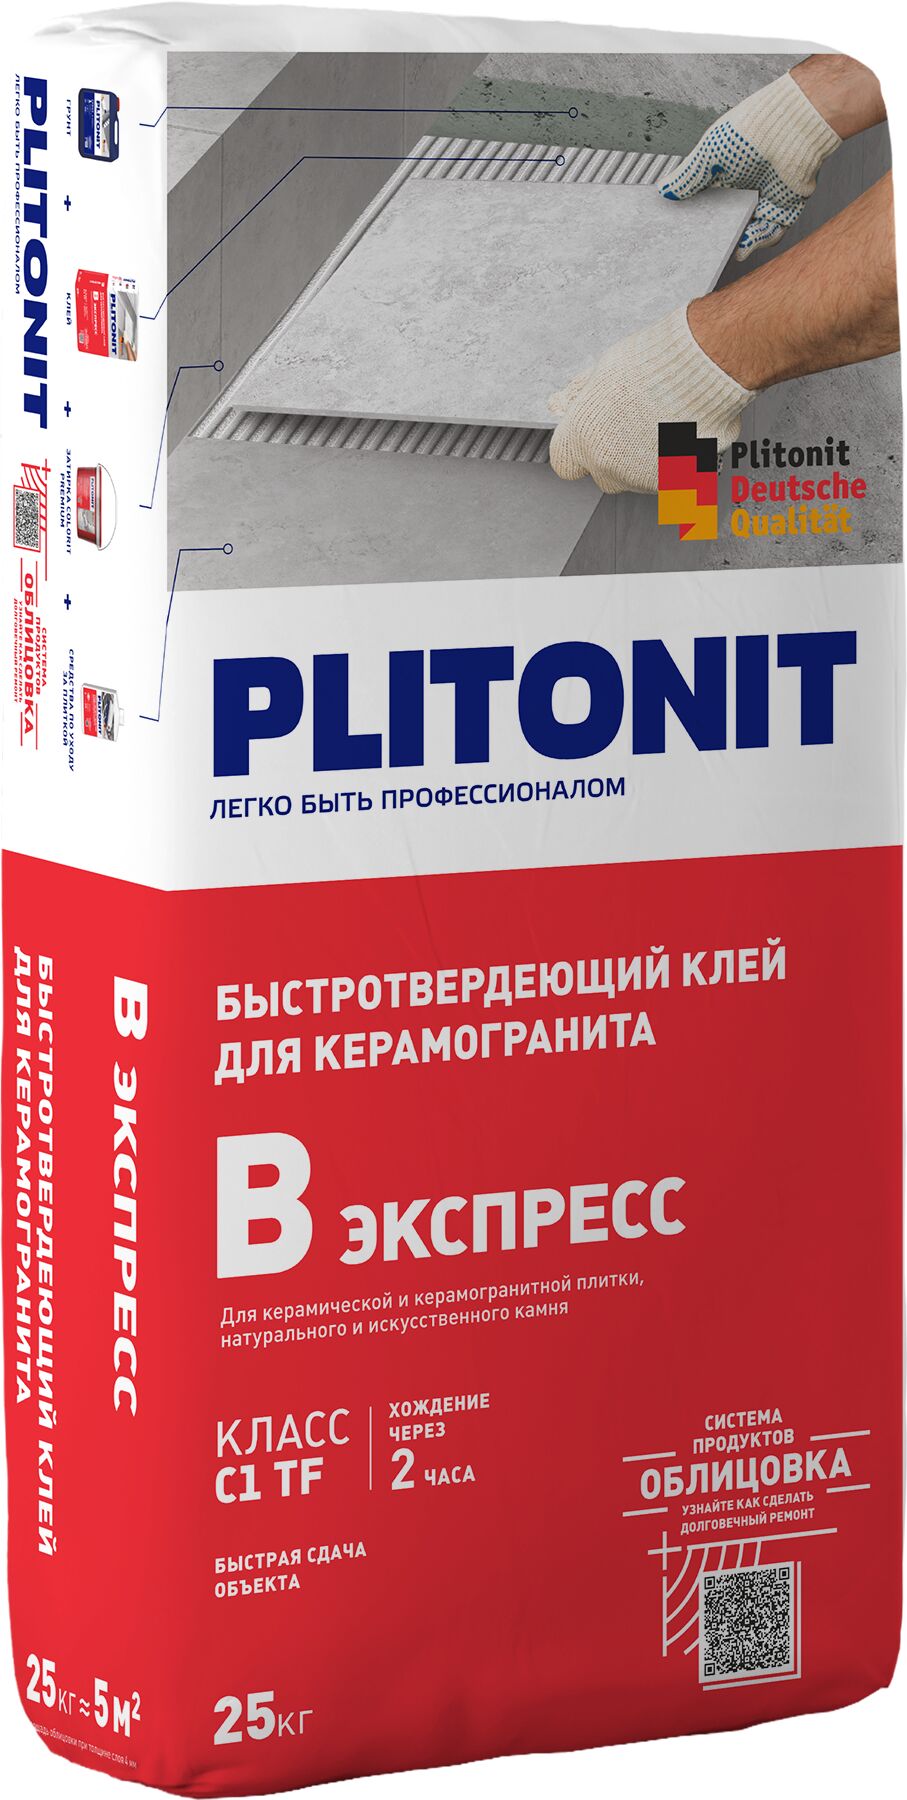 PLITONIT В экспресс (Вб) -25 быстротвердеющий клей, класс С1 ТF